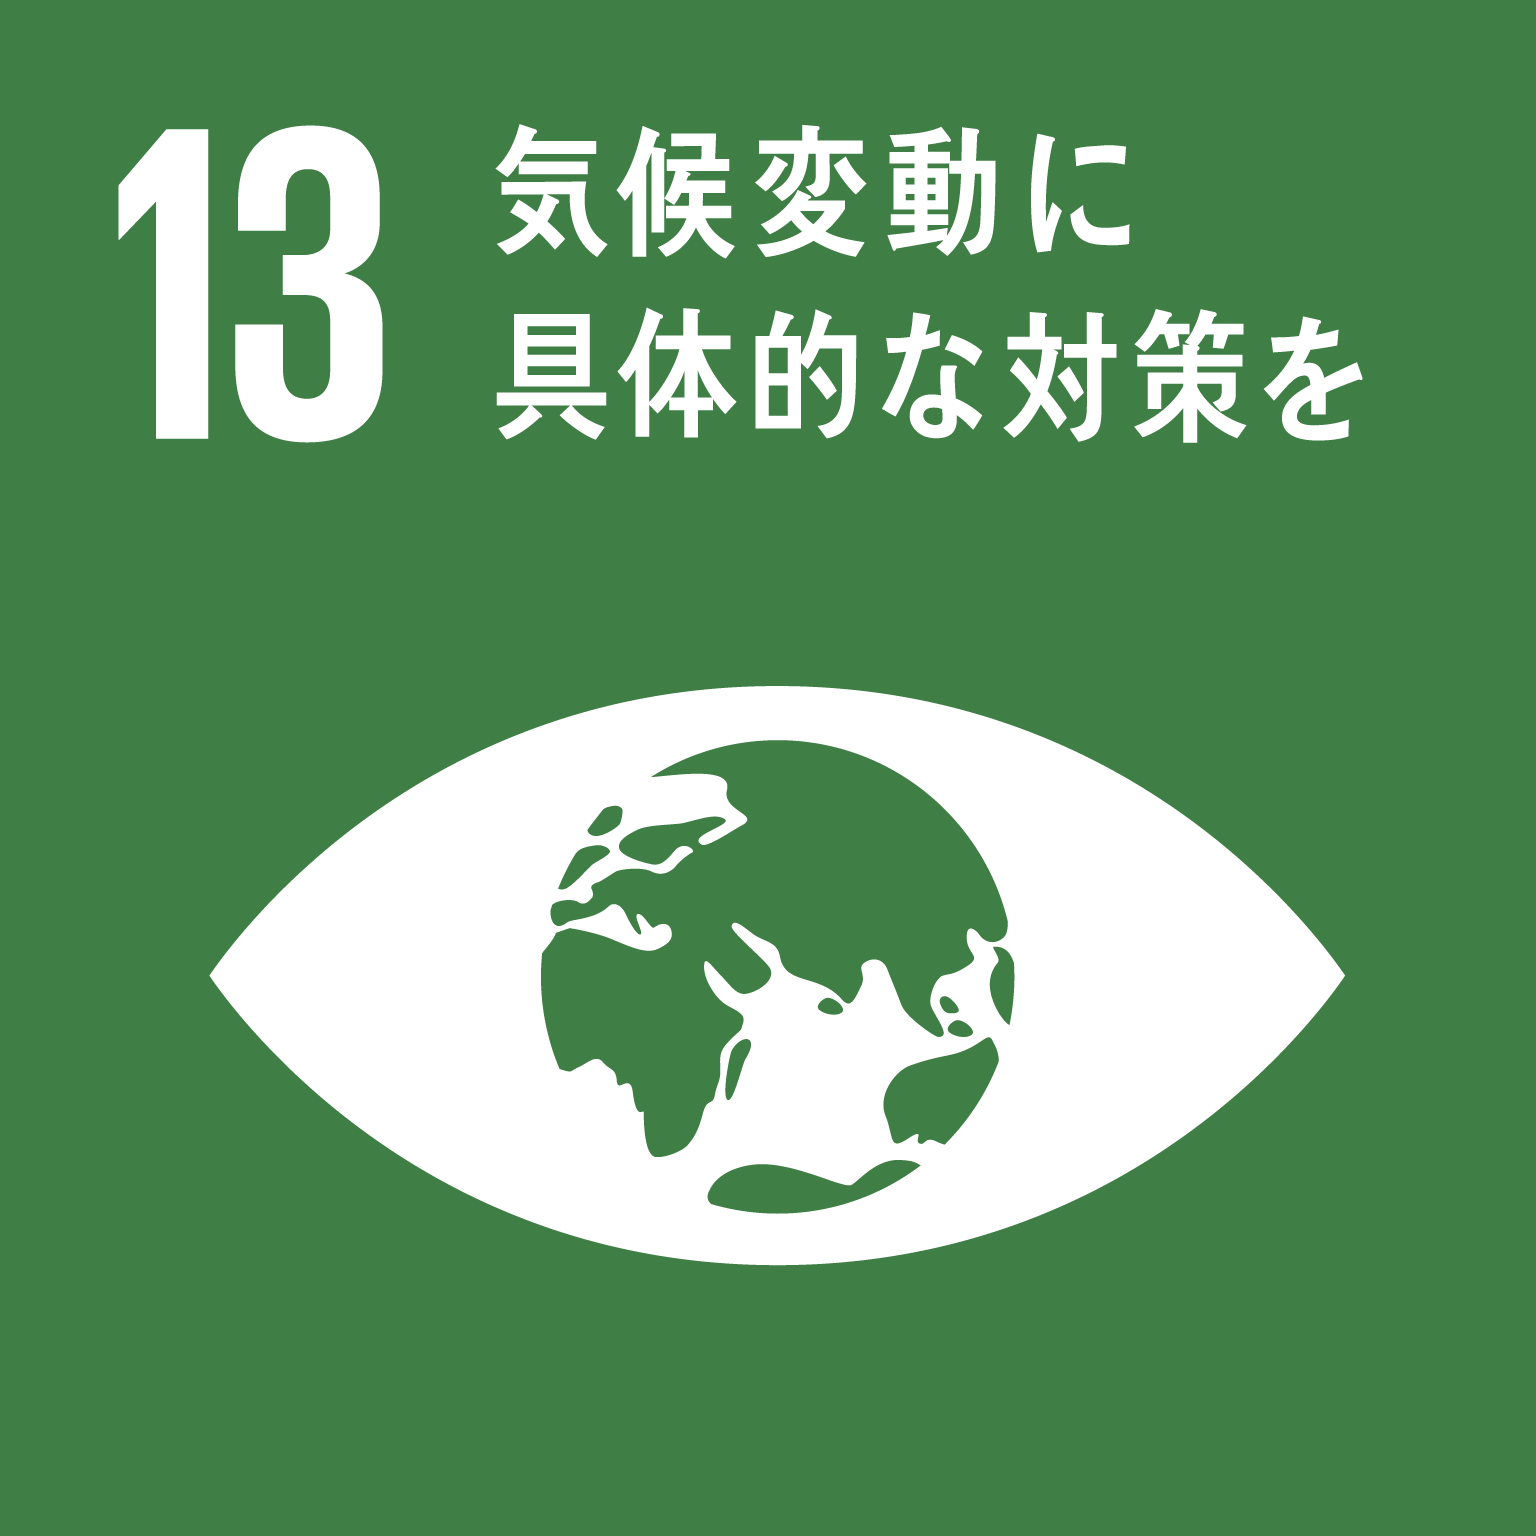 「13.気候変動に具体的な対策を」の文字と目標13のロゴ